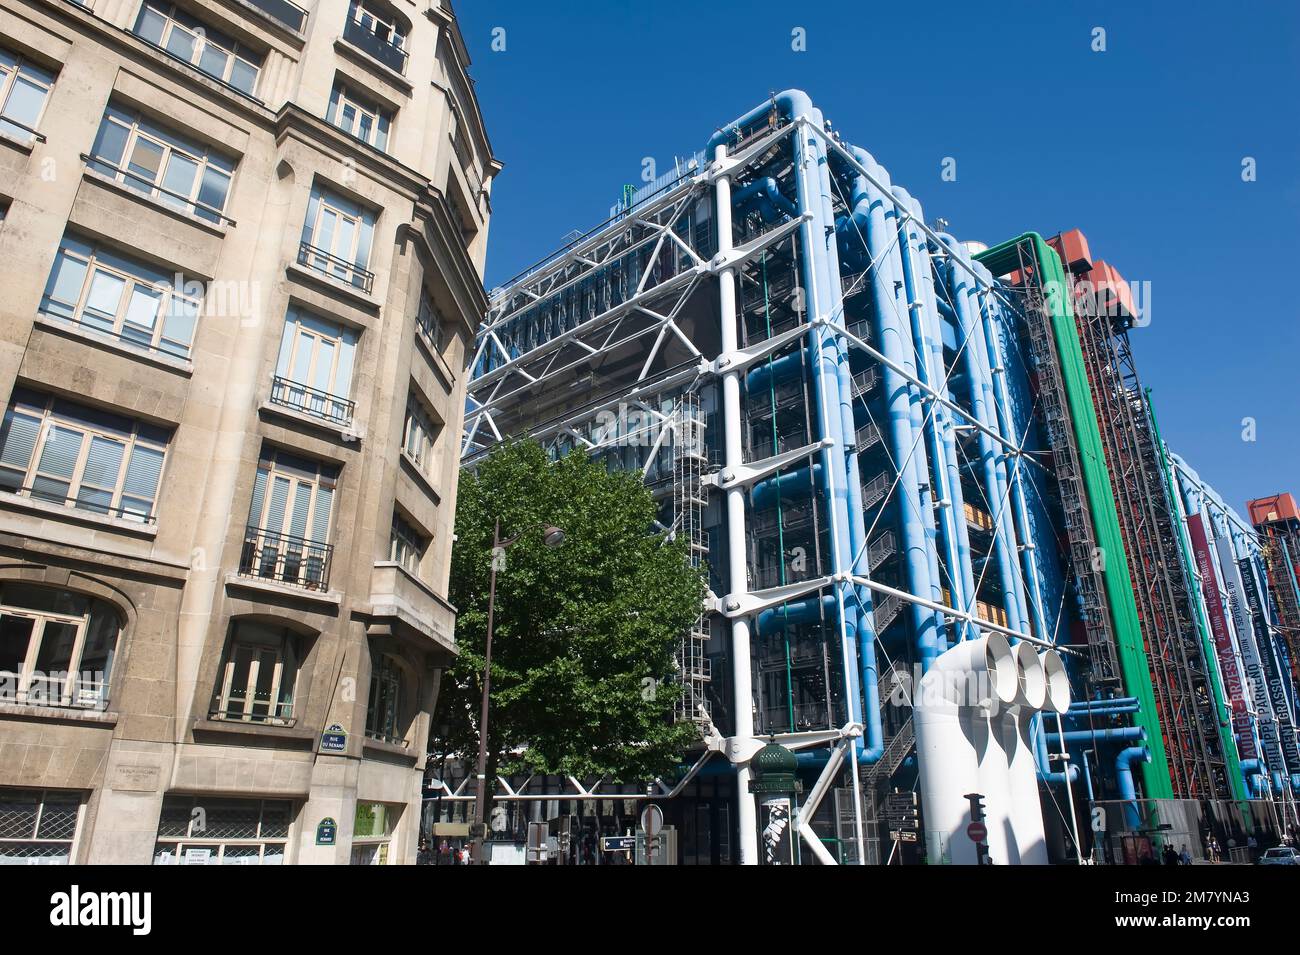 Centro culturale Pompidou conosciuto anche come Beaubourg, Parigi, Francia Foto Stock